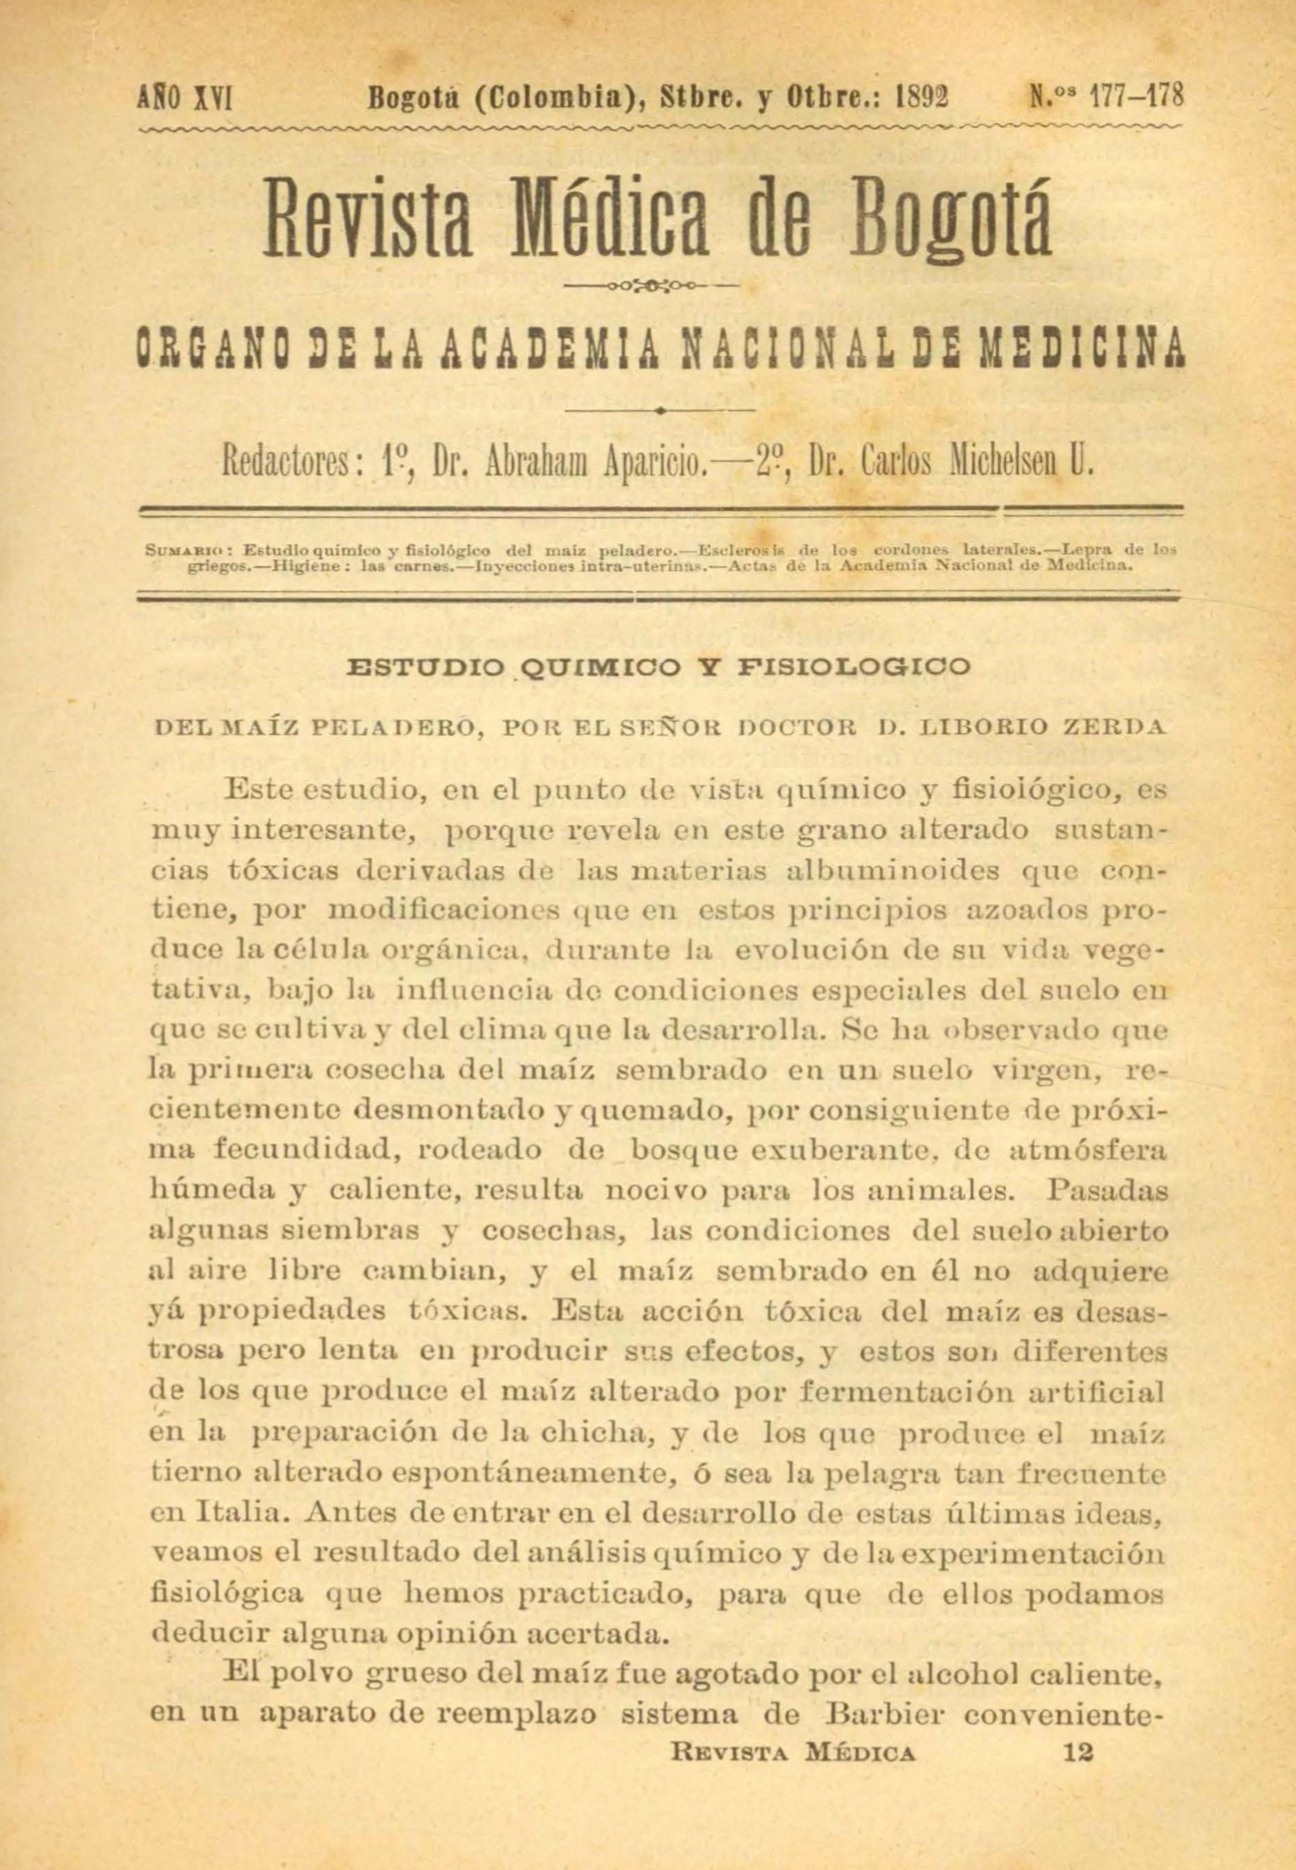 					Ver Vol. 16 Núm. 177-178 (1892): Revista Médica de Bogotá. Serie 16. Septiembre-Octubre de 1892. Núm. 177-178
				